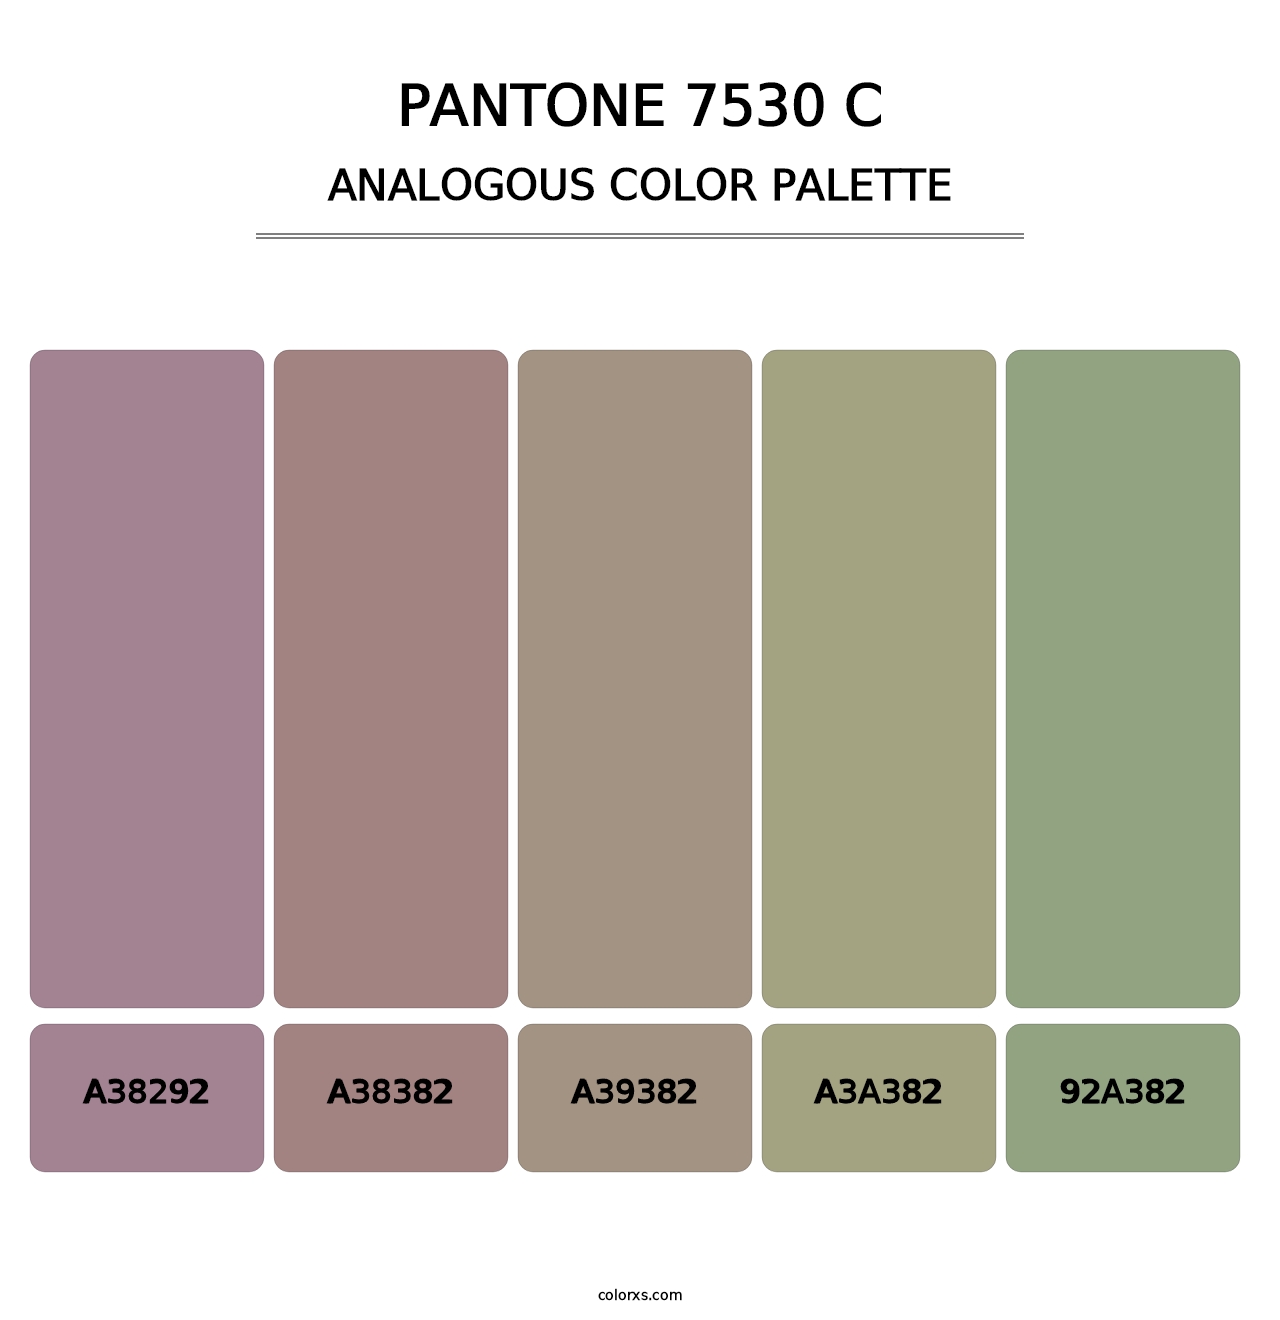 PANTONE 7530 C - Analogous Color Palette